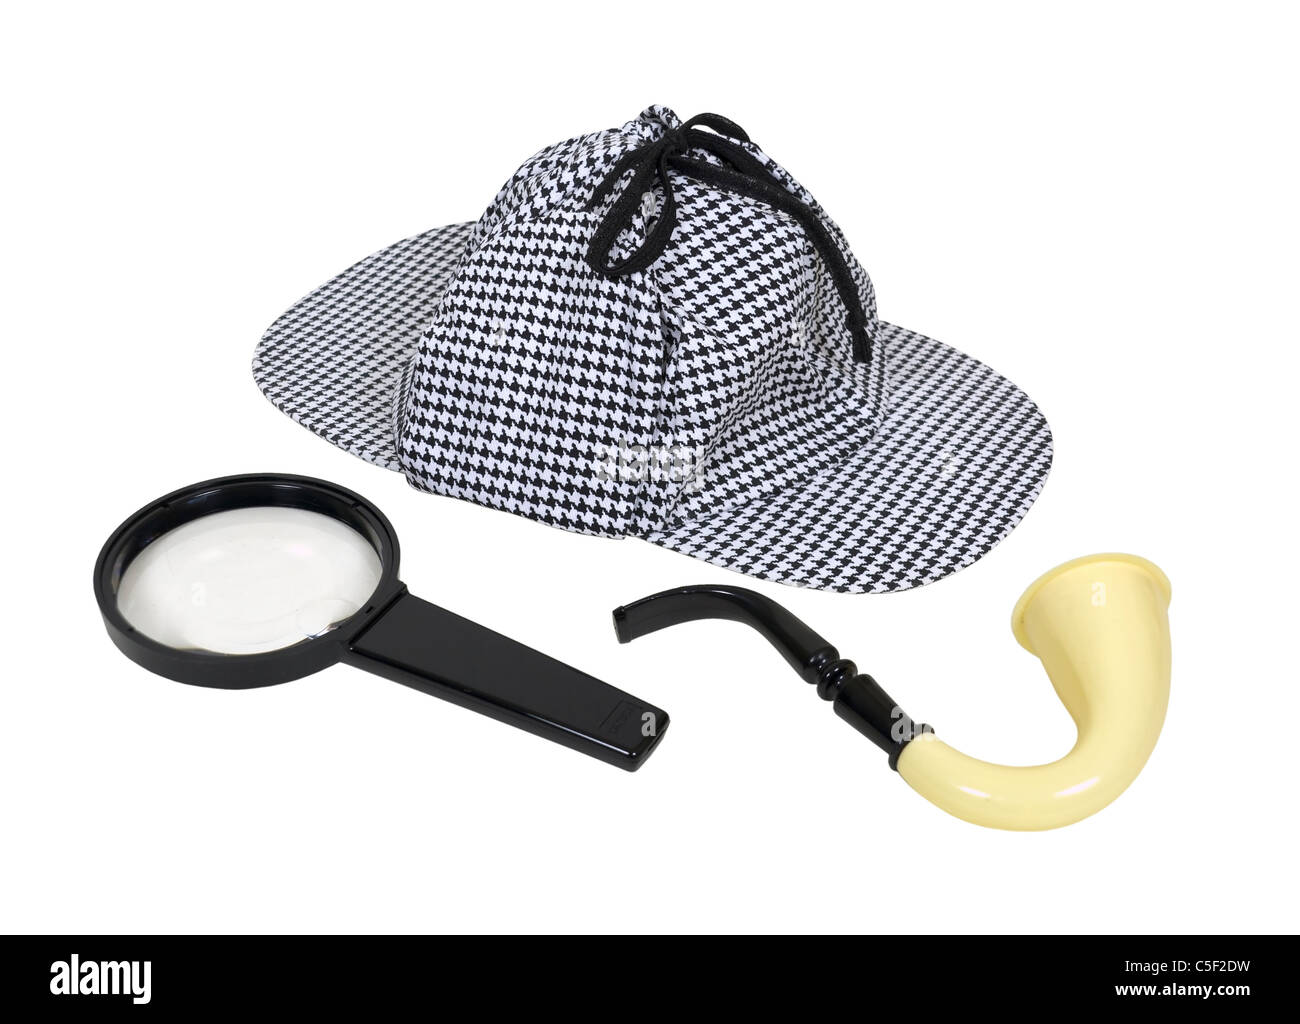 Retro-Detektiv-Tools, einschließlich eine Meershaum Pfeife, Lupe und einen Deerstalker-Hut - Pfad enthalten Stockfoto